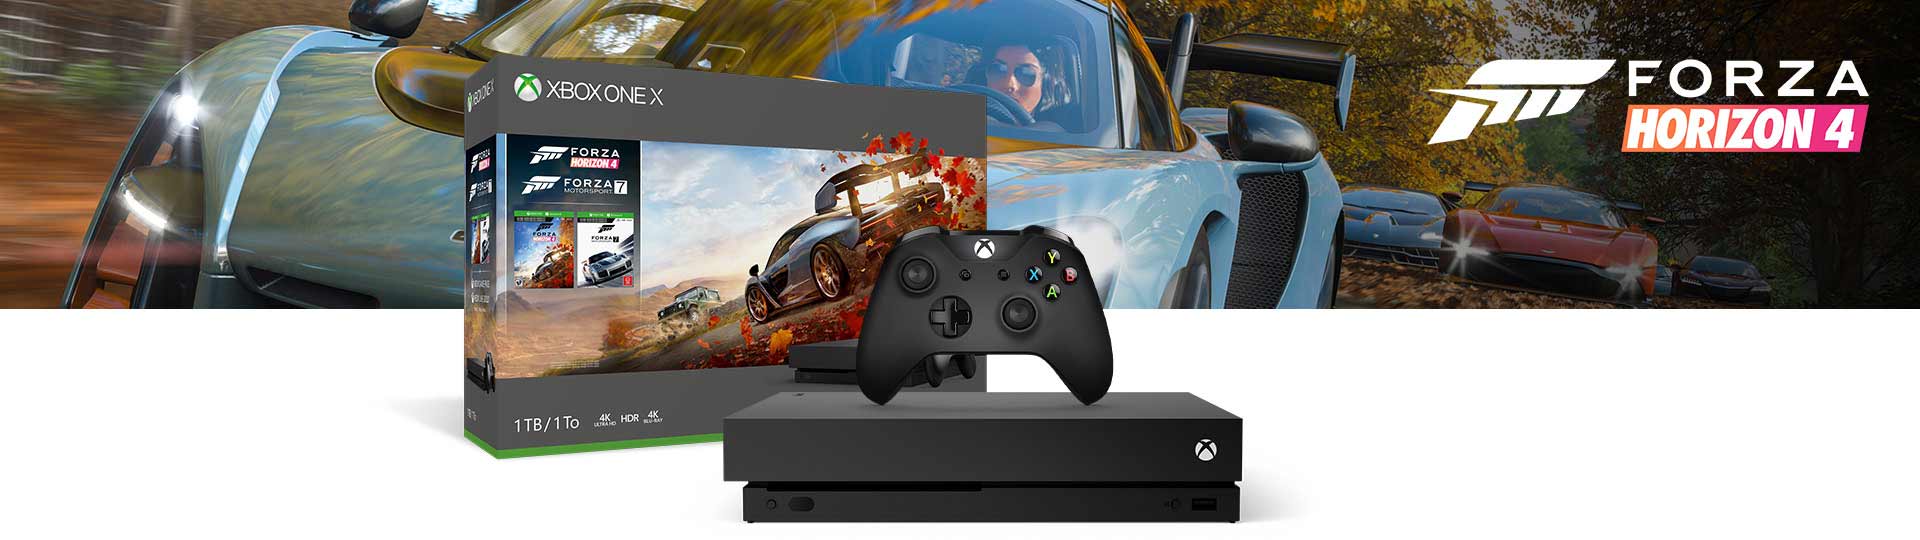 Forza Horizon 4 Xbox One Bundles